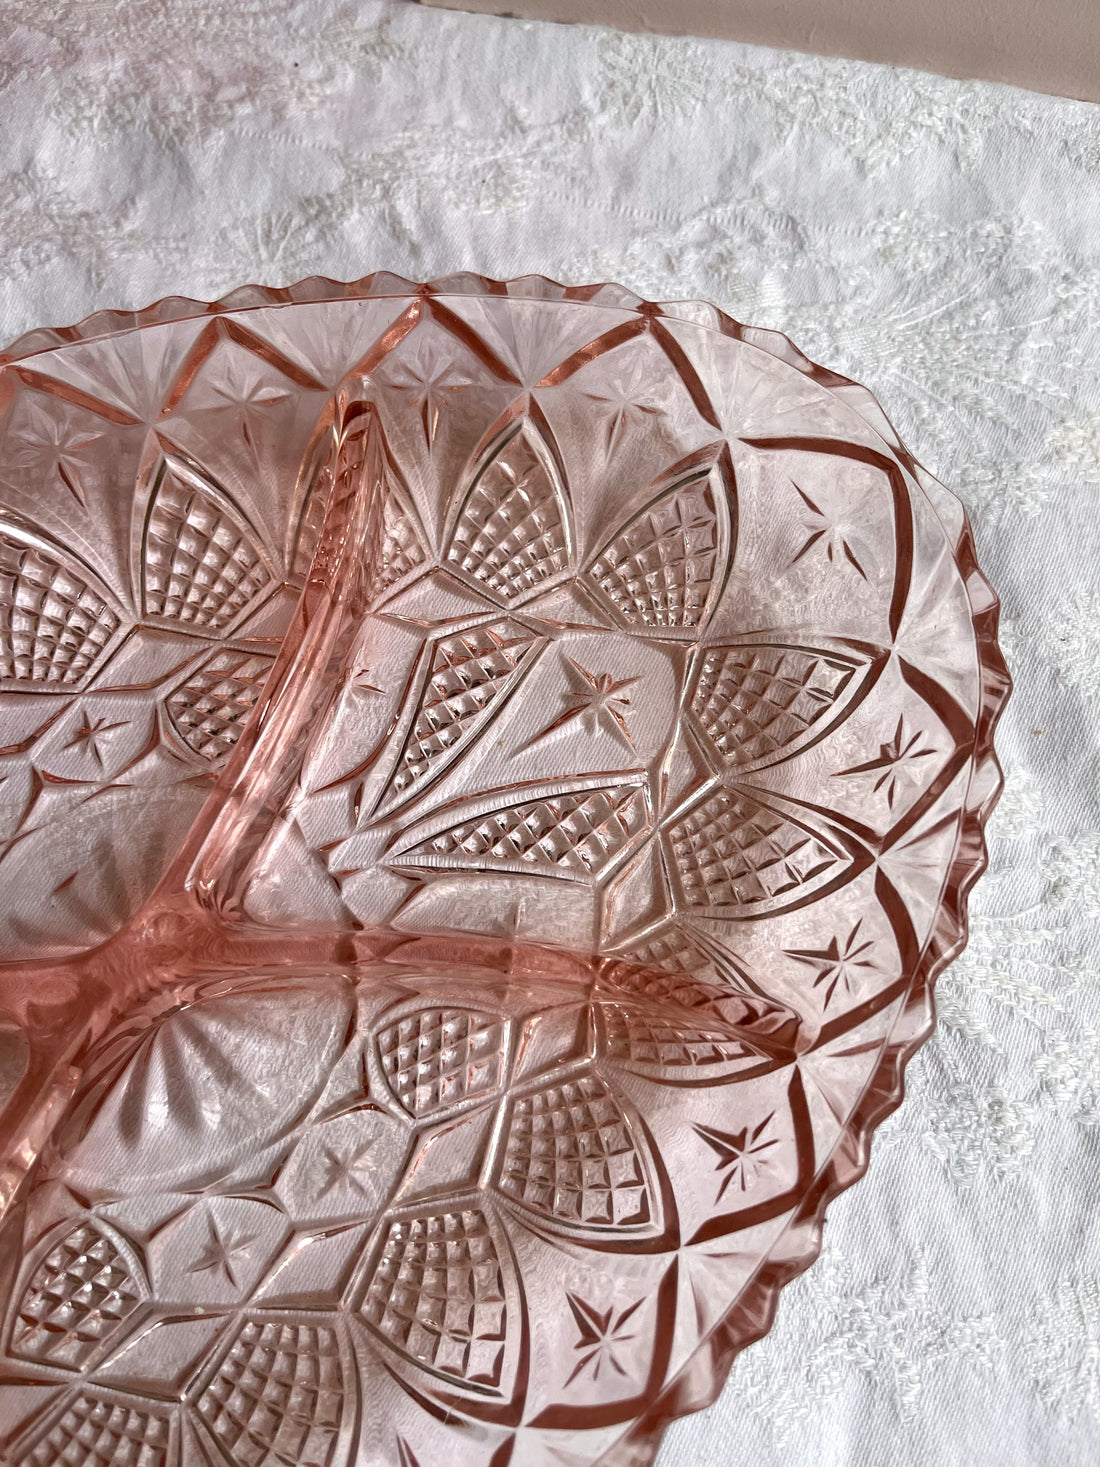 Plat à apéritif avec compartiments en verre moulé ciselé rose- Made in France